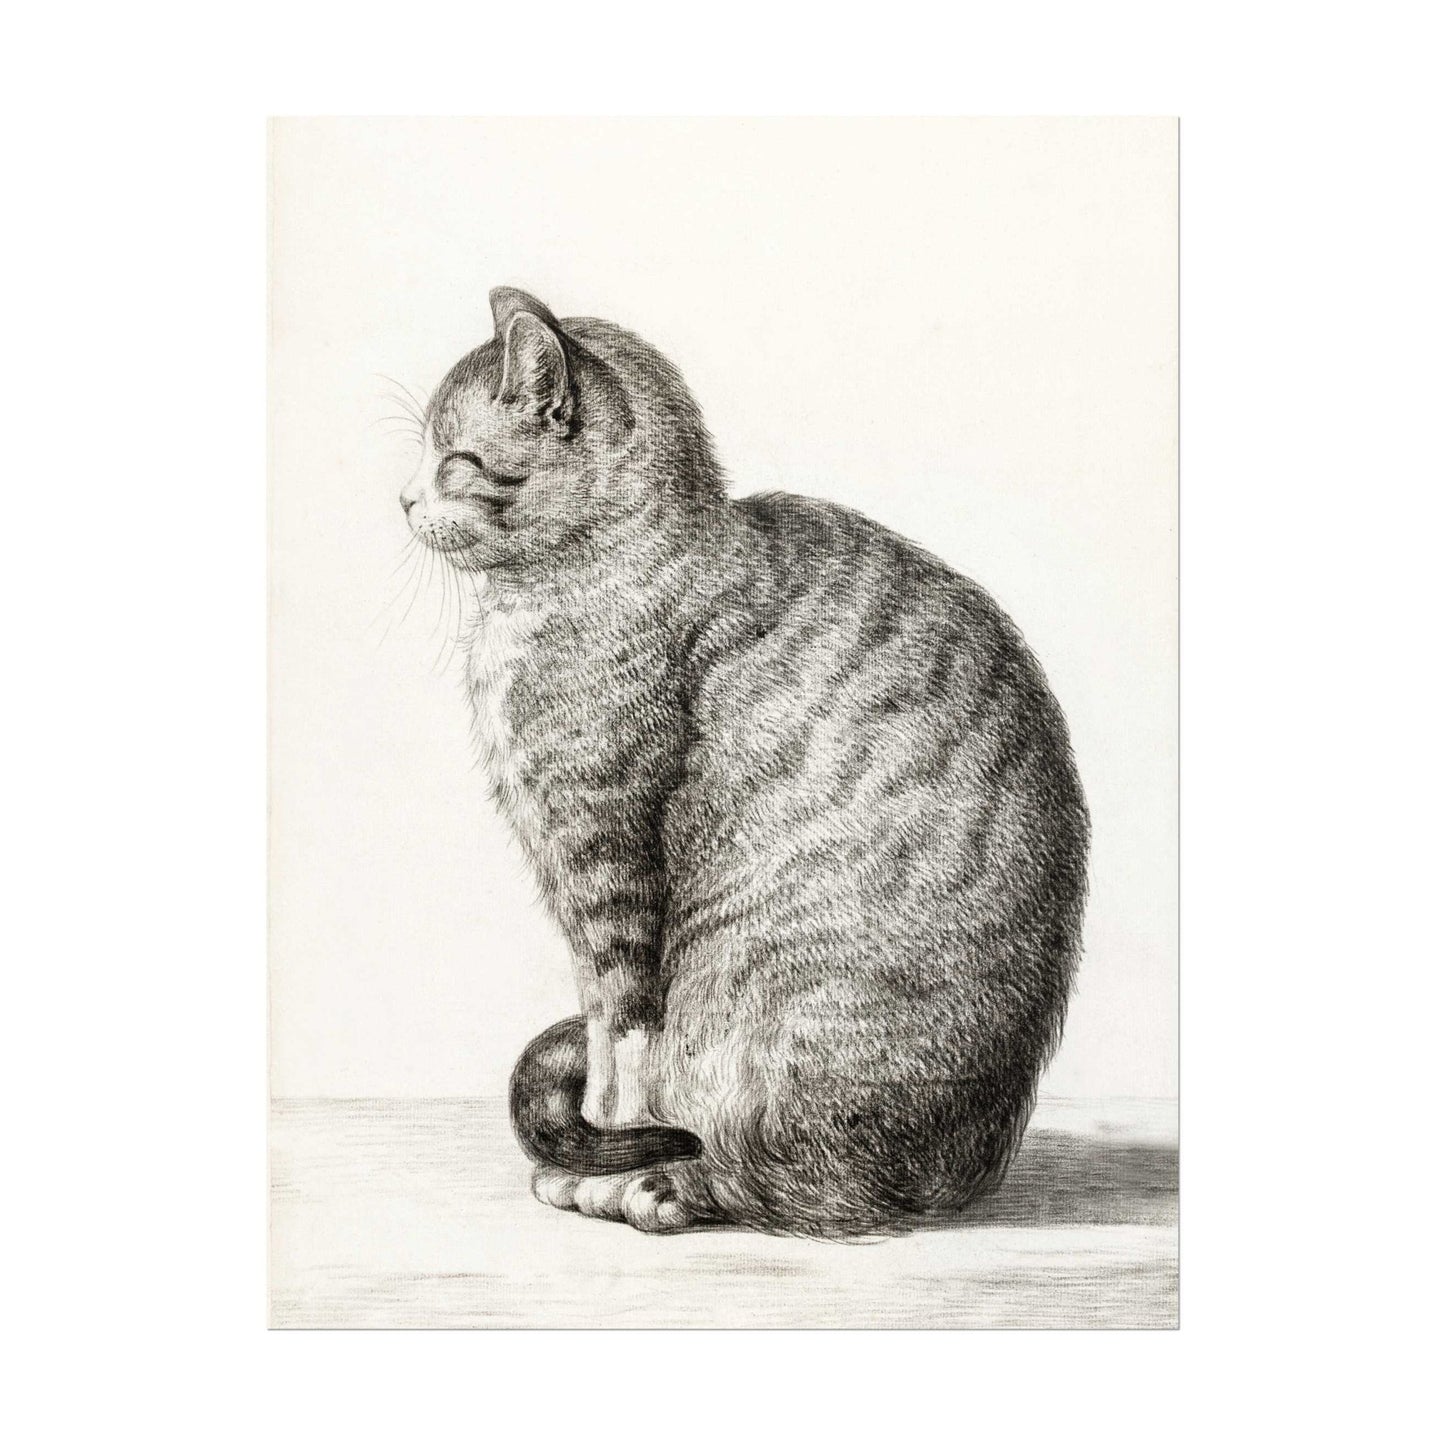 Sitting Cat (Vintage Animal Drawing)